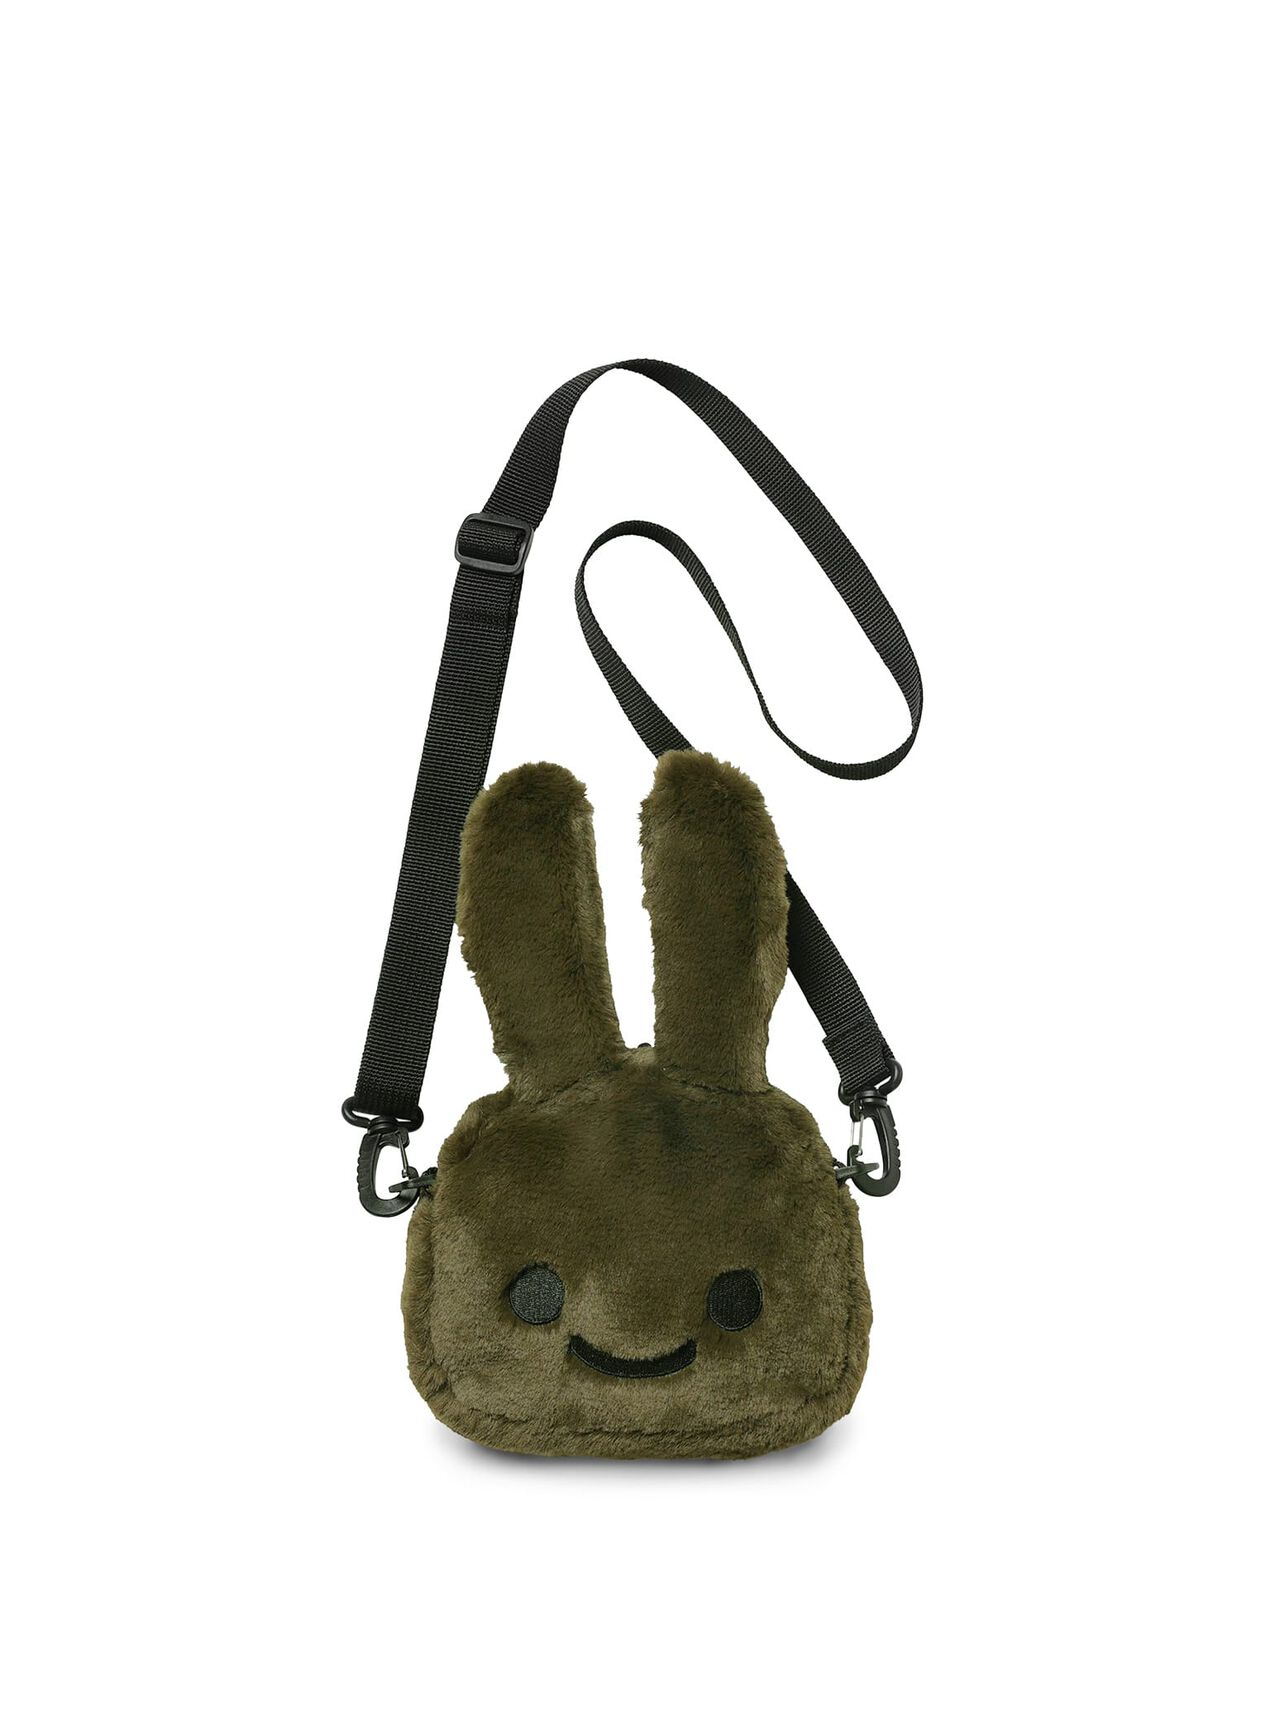 Fluffy Rabbit Shoulder Bag Small,ONE, large image number 0